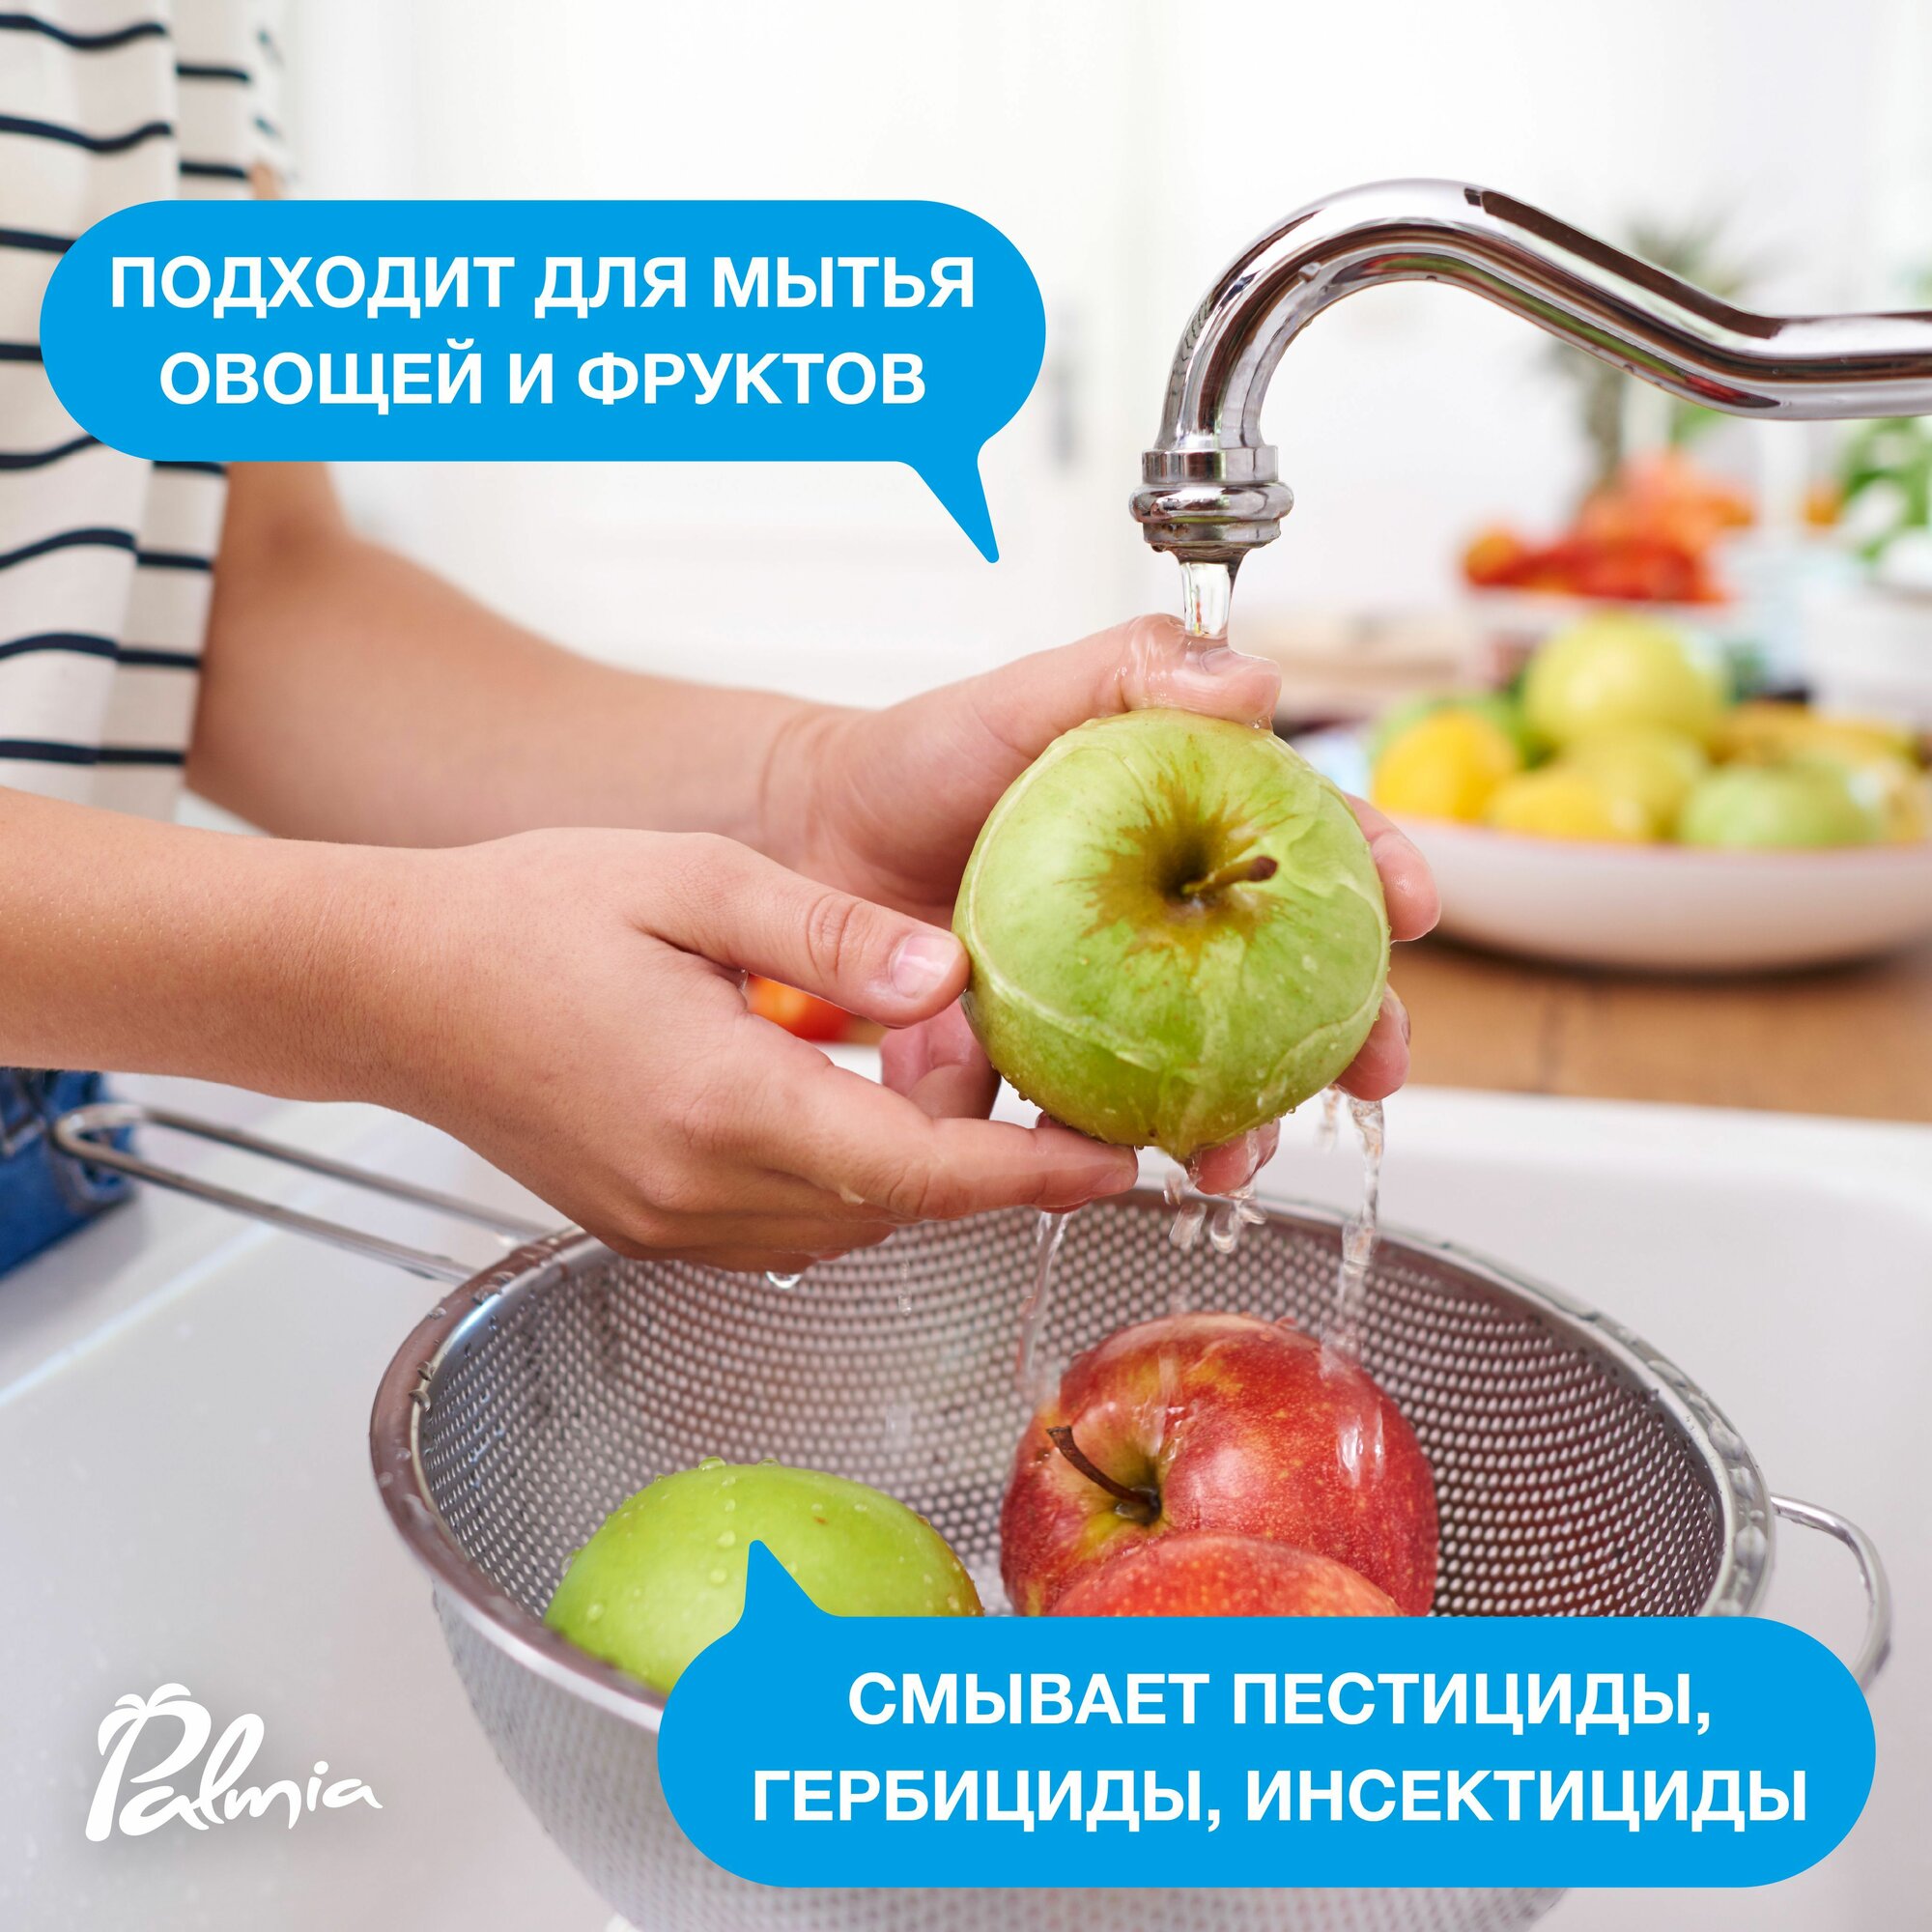 Средство Palmia Sensitiva для мытья посуды овощей и фруктов, 5 л - фото №6